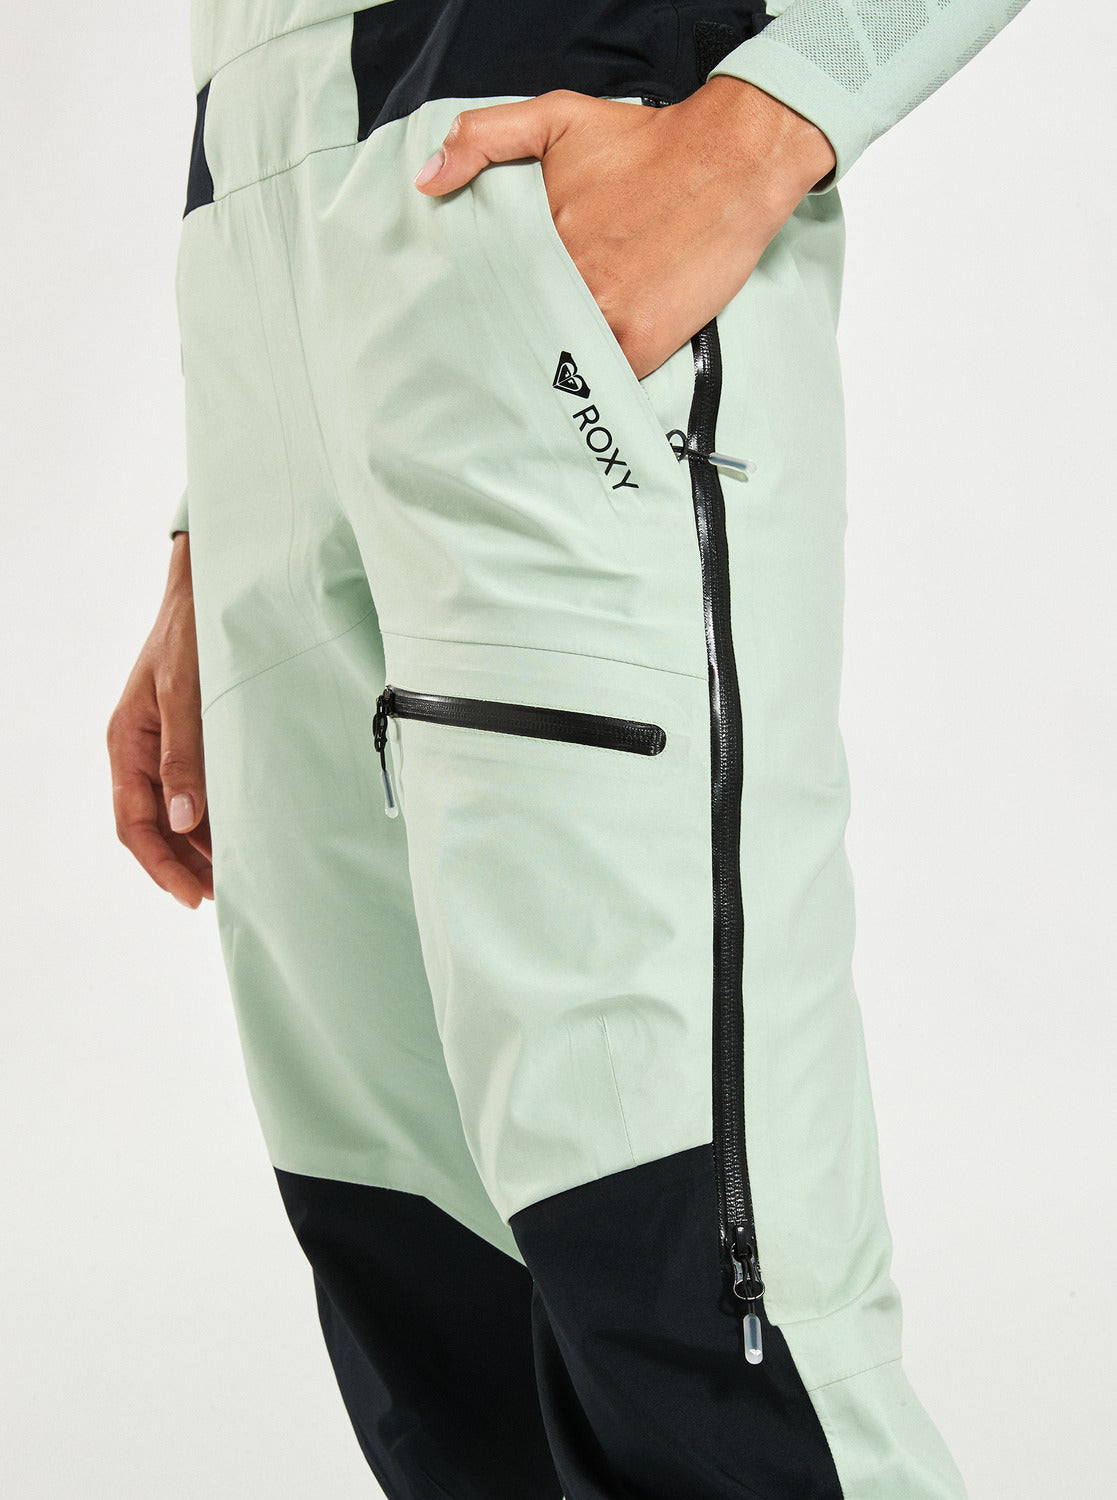 GORE-TEX® Lunalite 3L - Technical Snow Bib Pants for Women